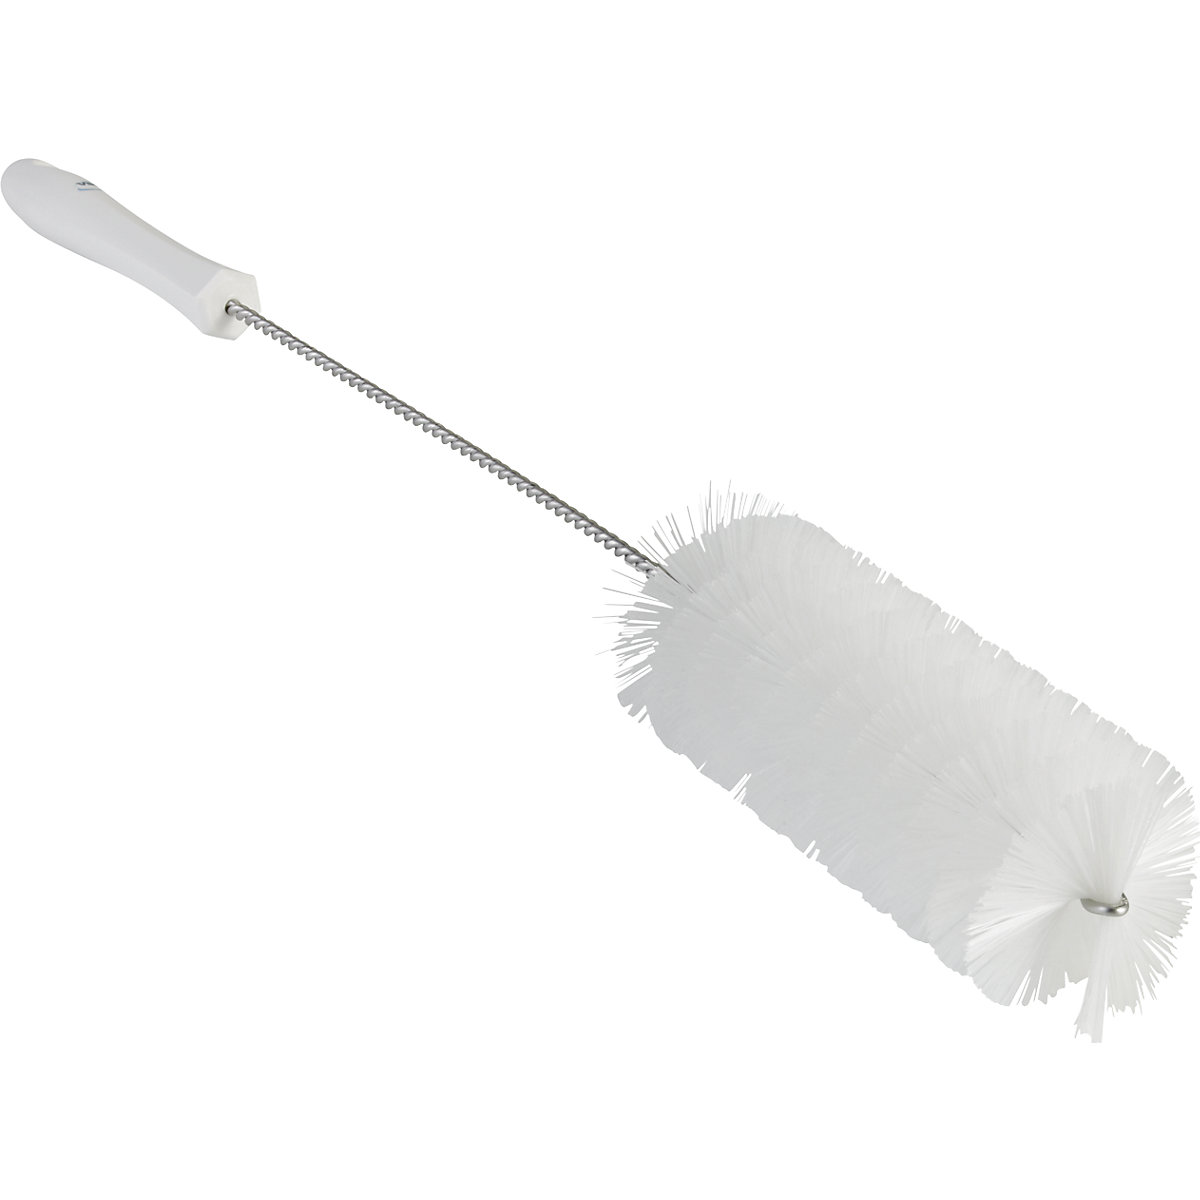 Pipe brush with handle – Vikan, medium, Ø 60 mm, pack of 15, white-6